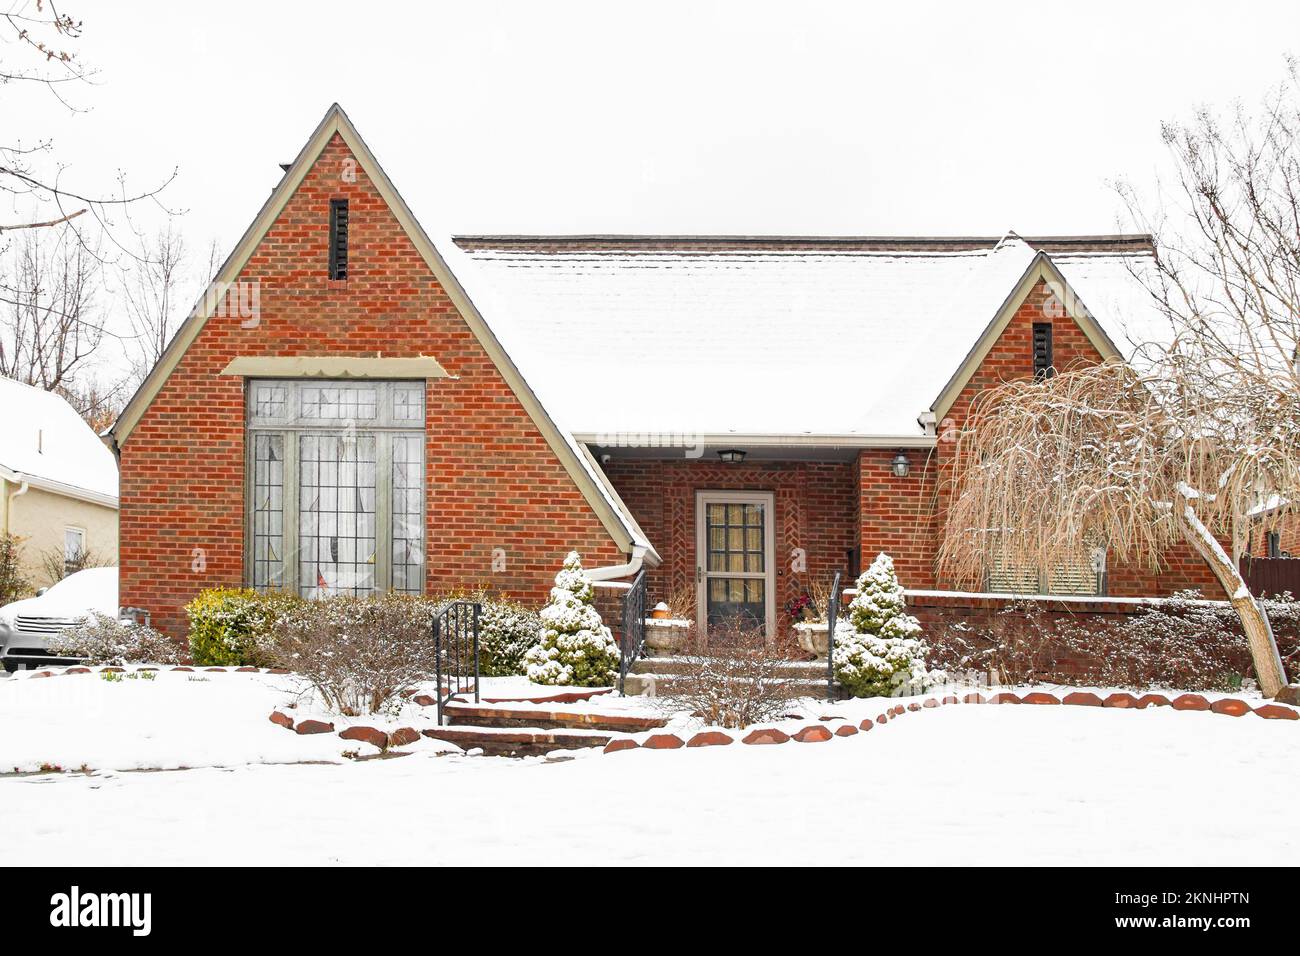 Gepflegtes und ordentliches Backsteinhaus in frischem, kontrastreichen Schnee mit Auto daneben - schön angelegt Stockfoto